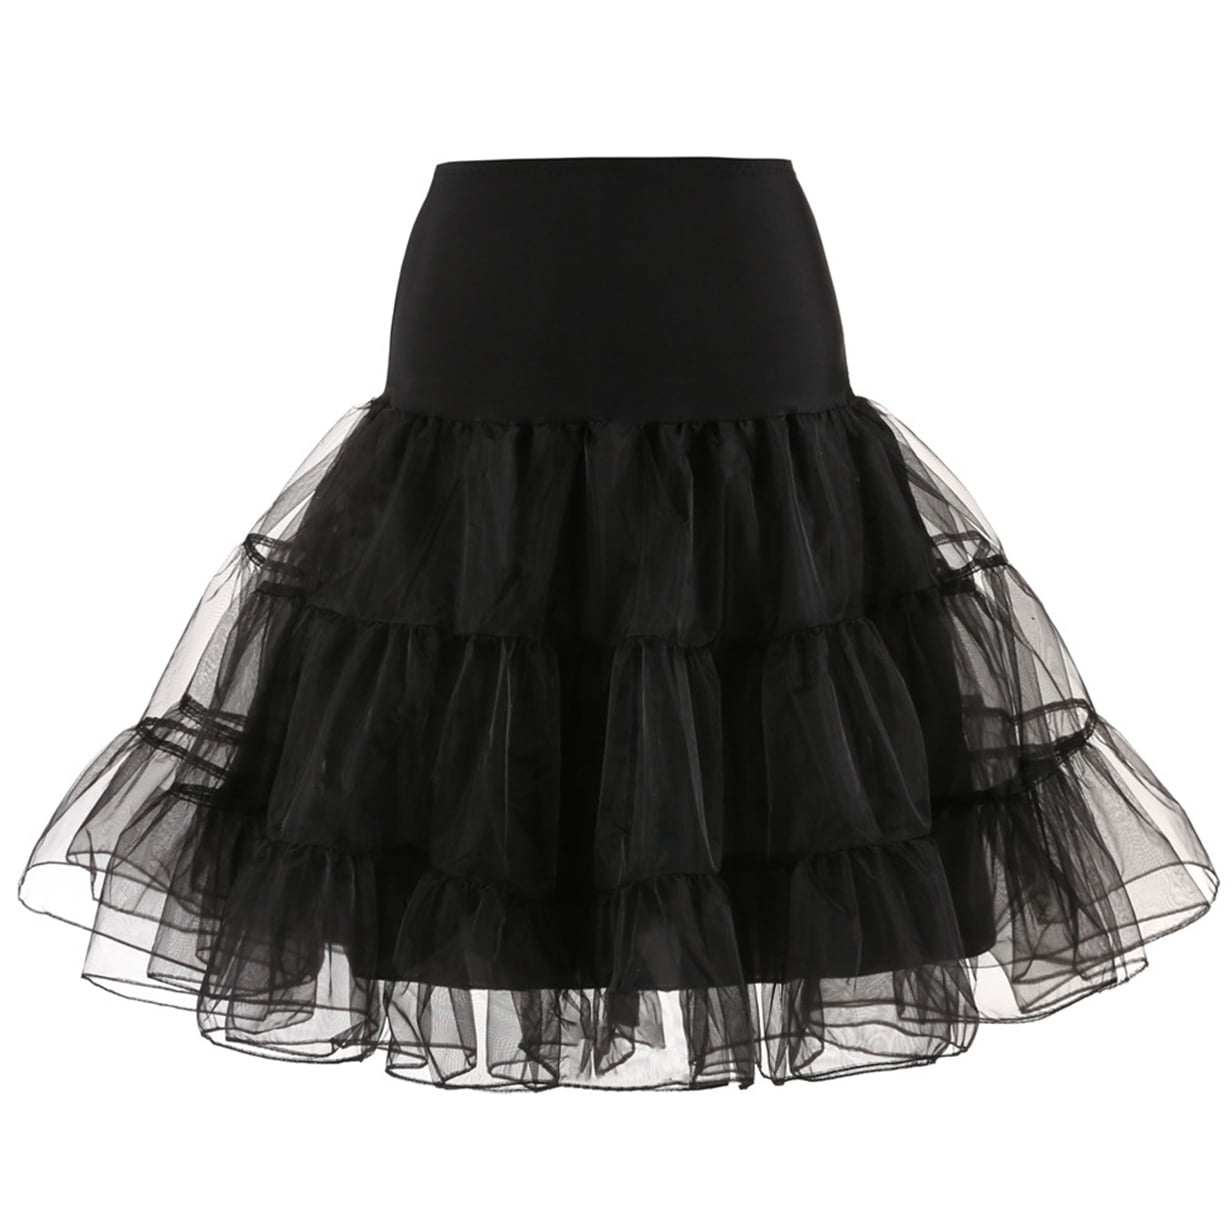 M/L Tulle Underskirt Petticoat Black for Fancy Dress Rockabily Tütü Girls Womens Skirt 